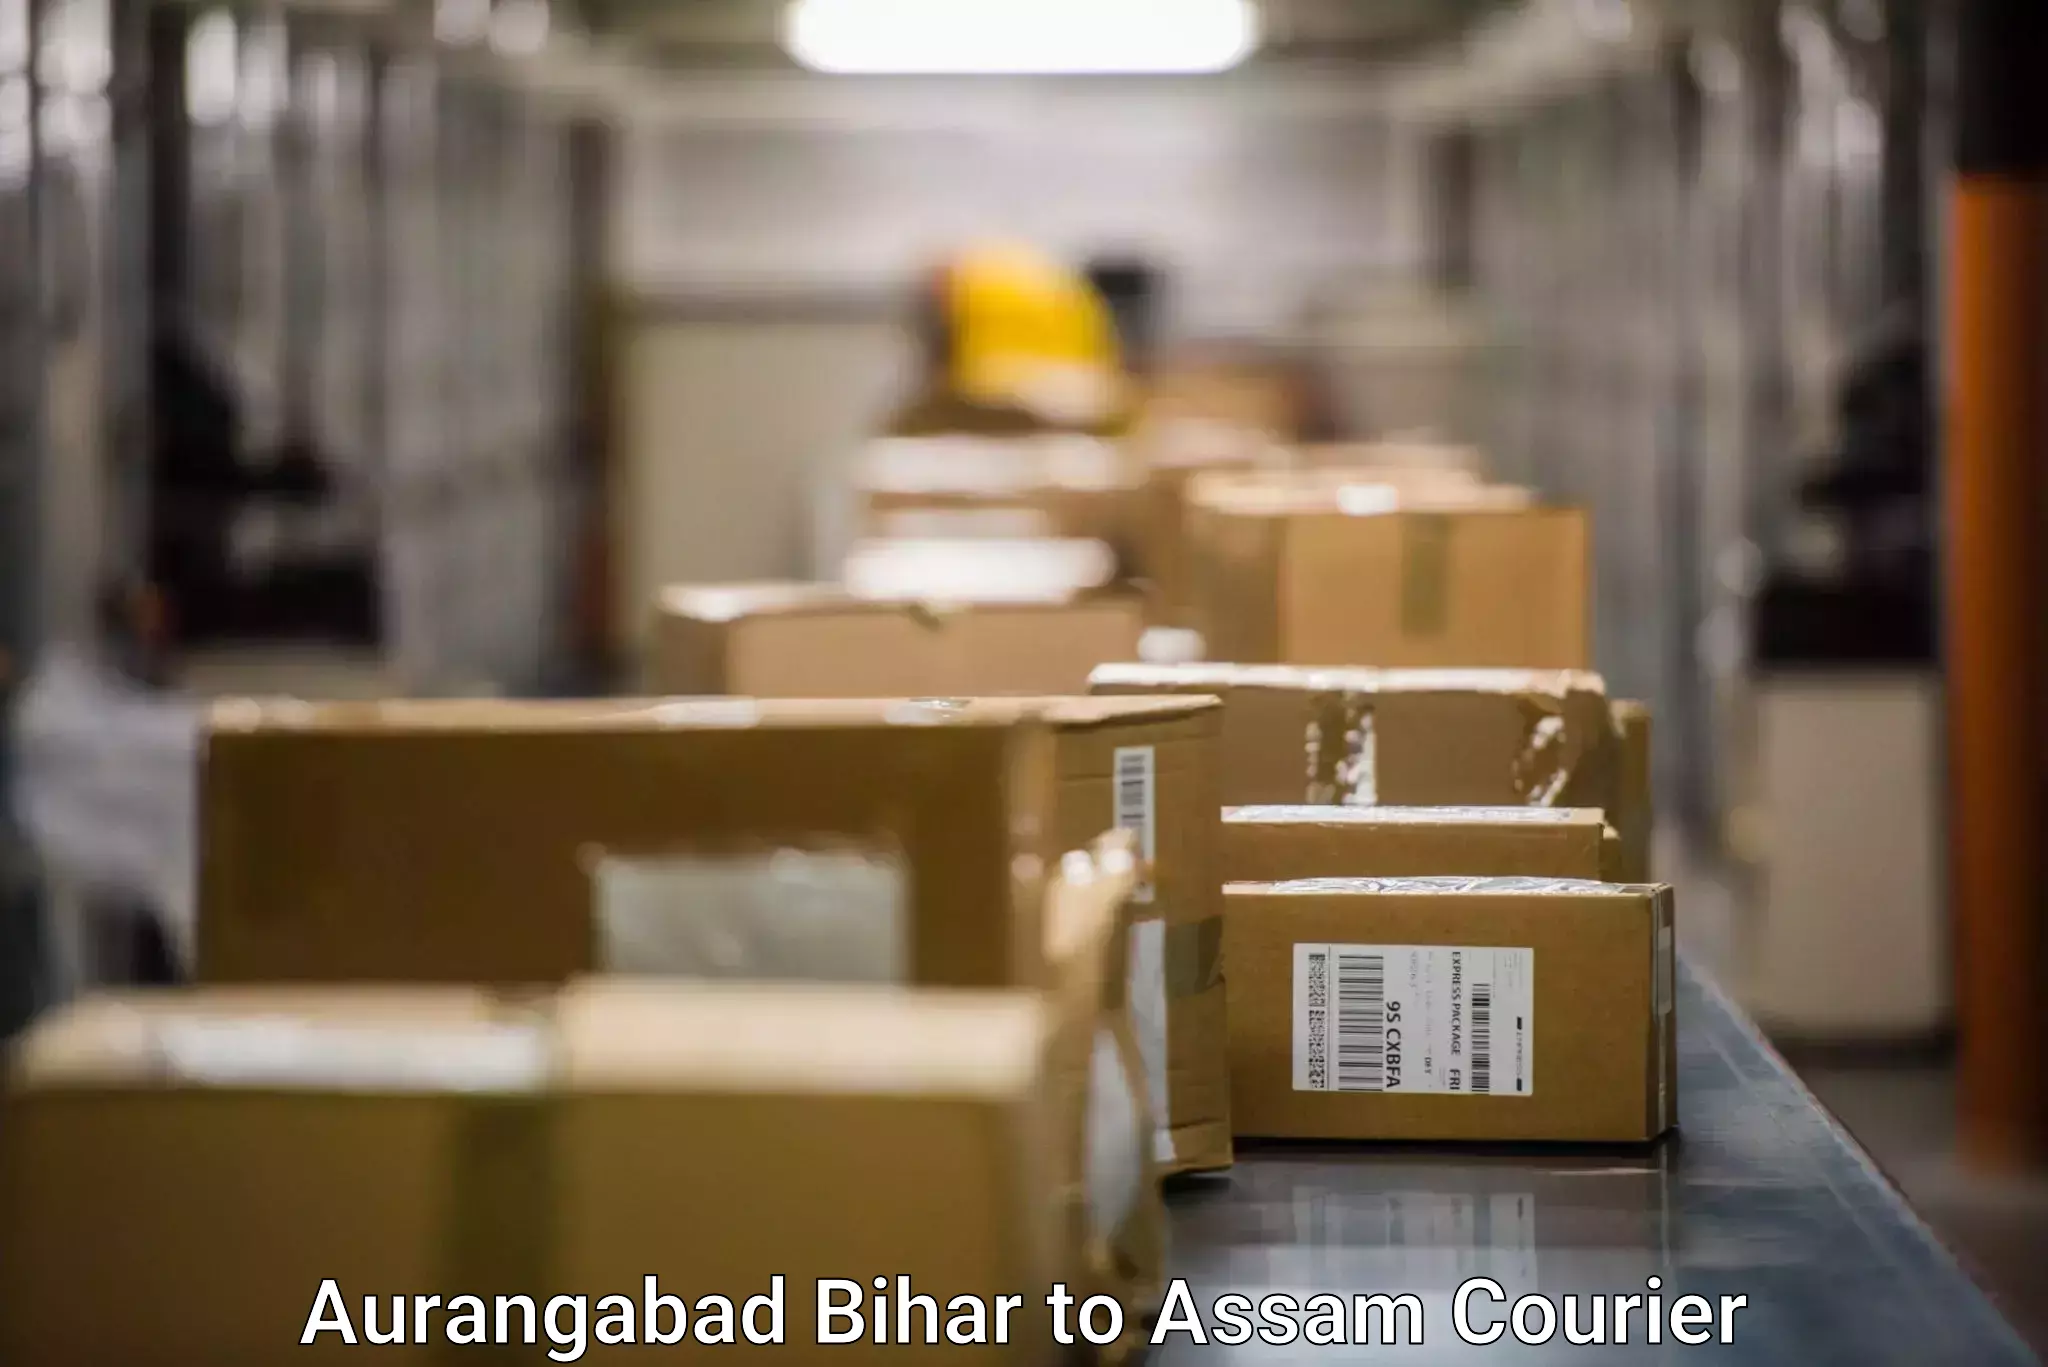 Courier service partnerships Aurangabad Bihar to Kalaigaon